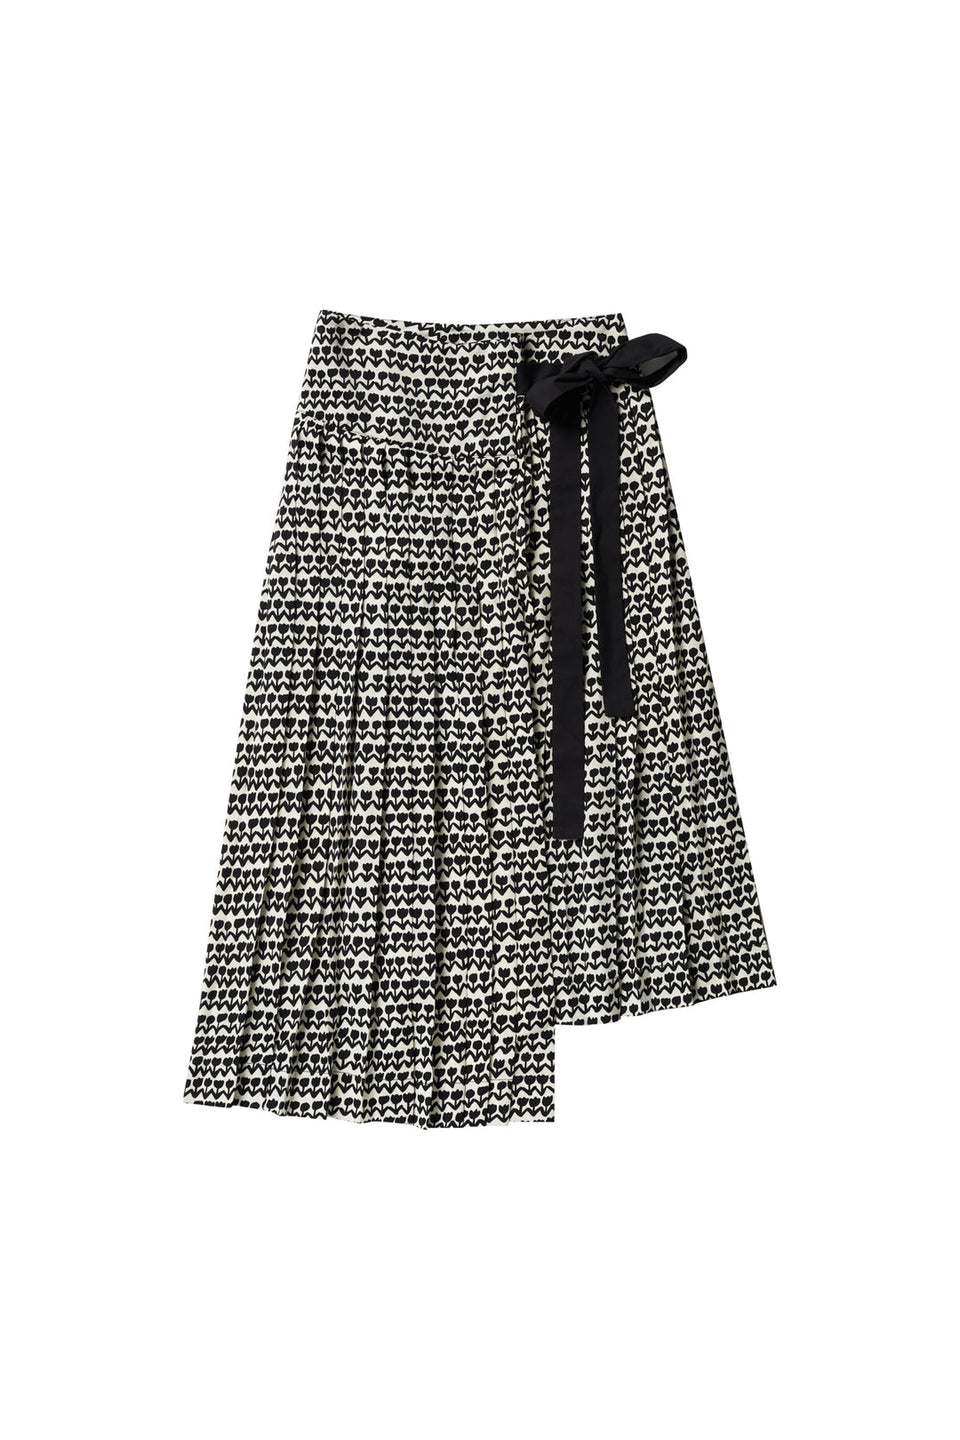 Zaikamoya Black Tulip Tie Skirt